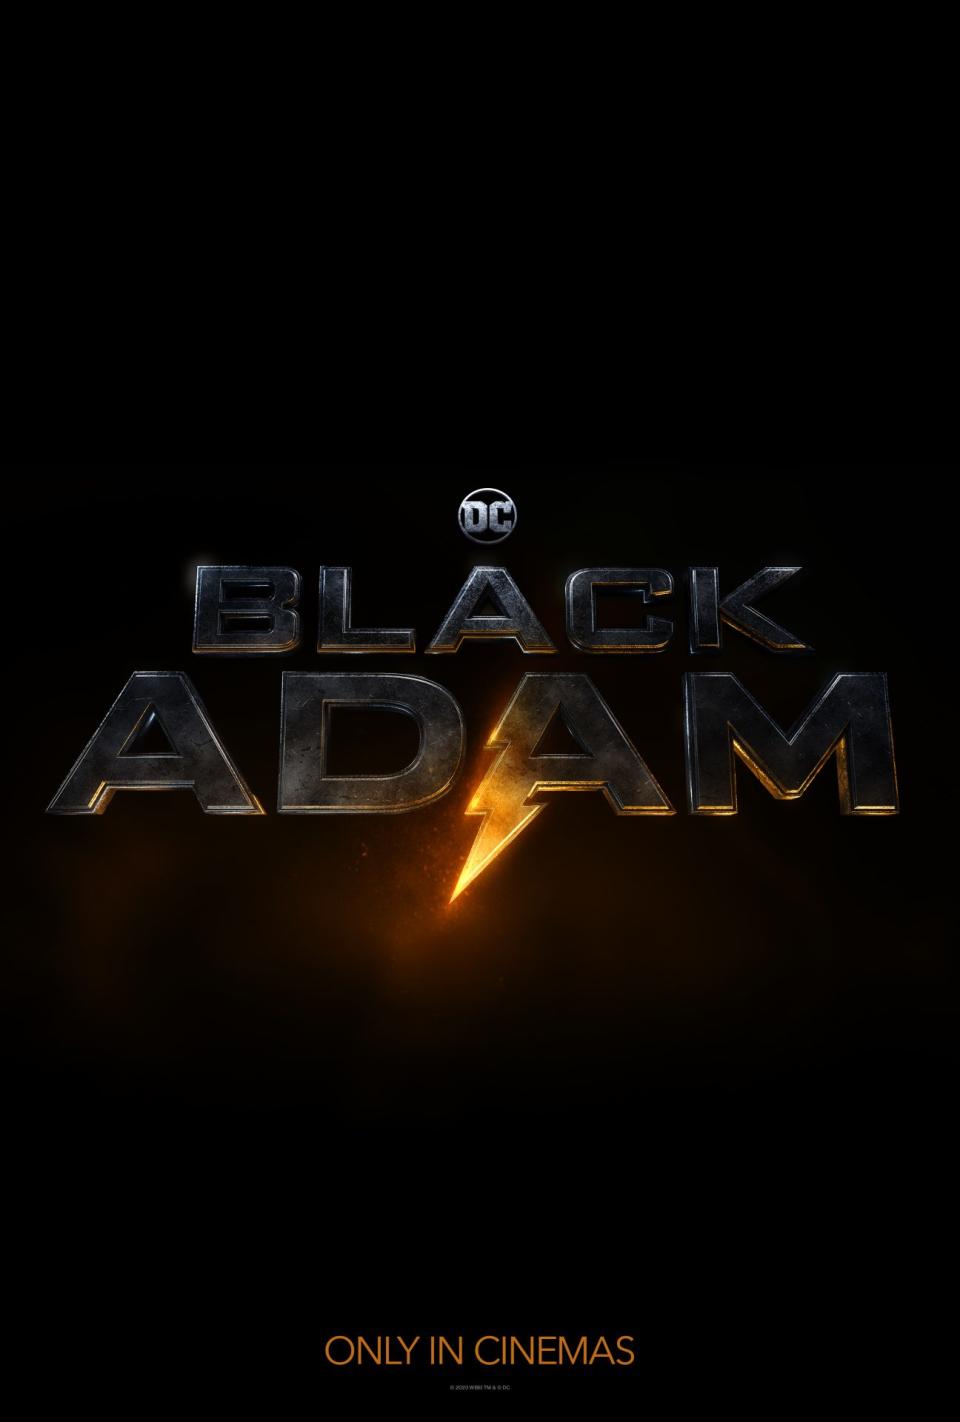 Black Adam's logo.